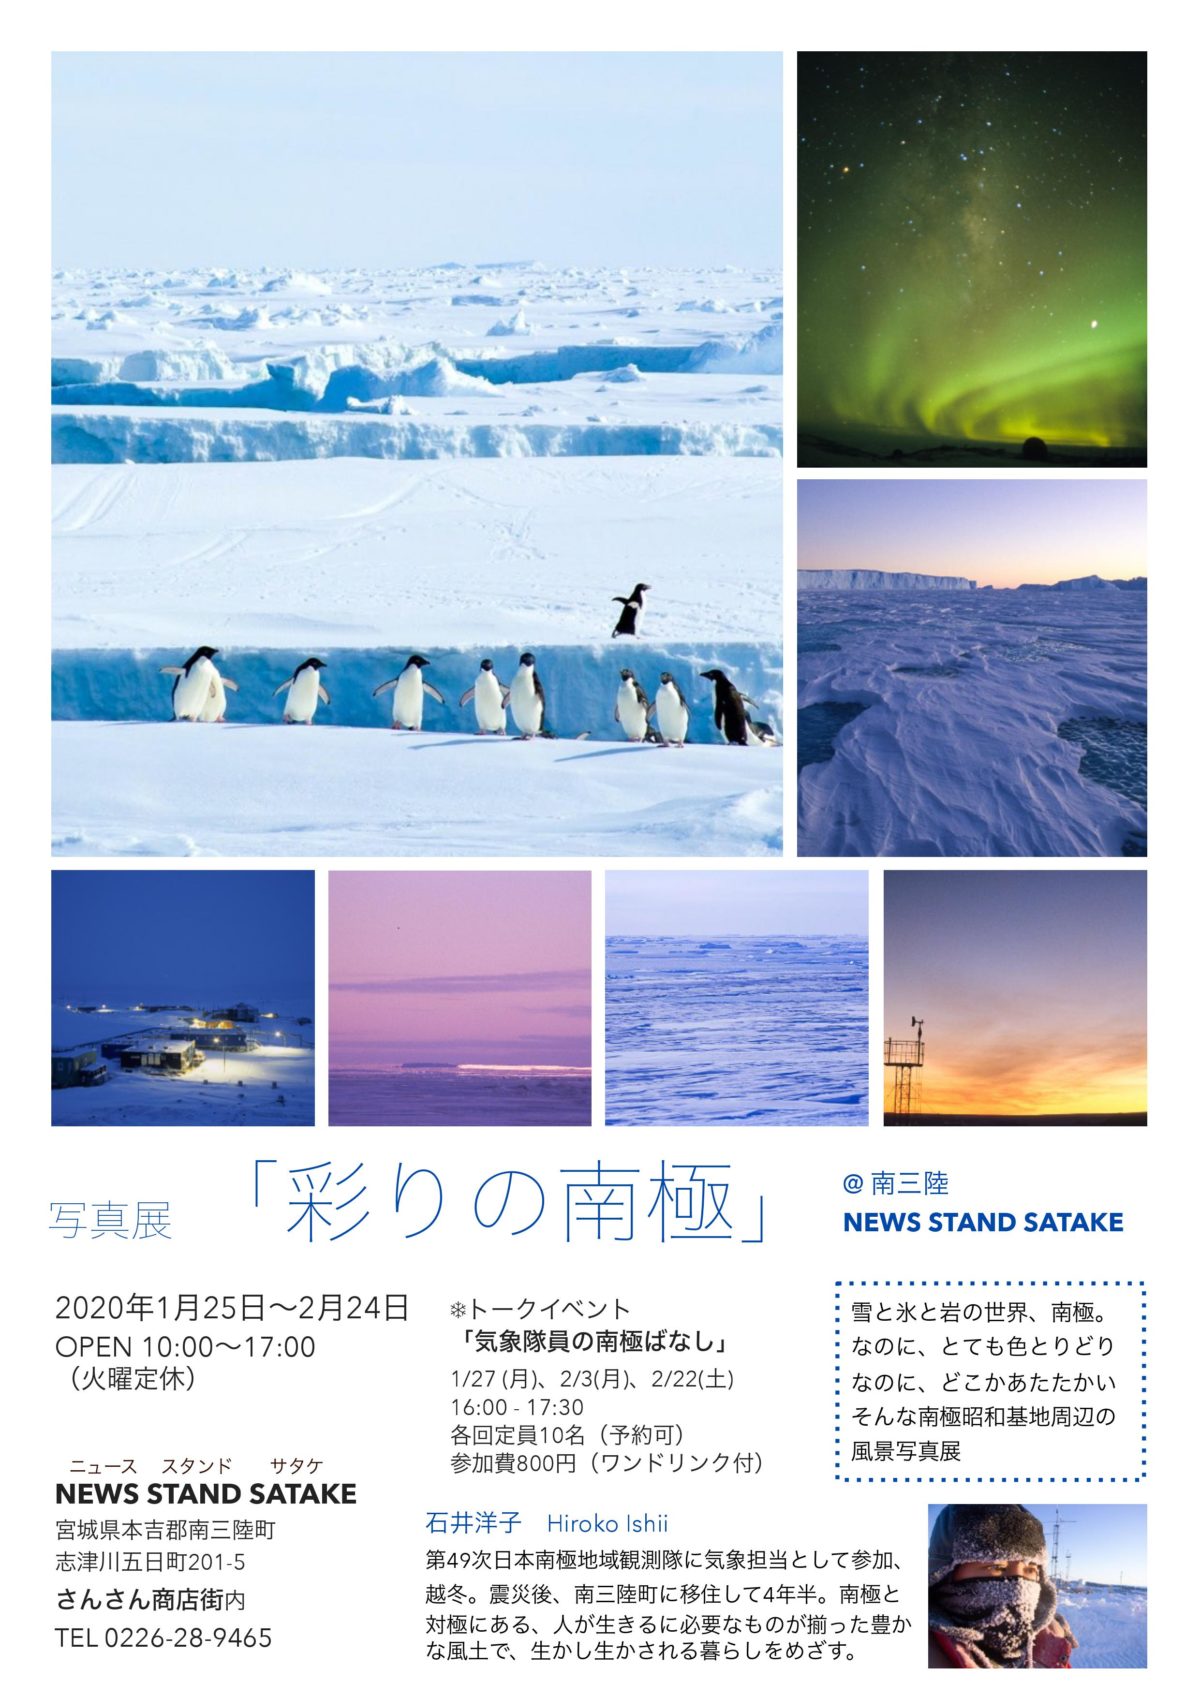 ”NEWS STAND SATAKE”にて写真展「彩りの南極」開催のお知らせ！トークイベントも開催されます！